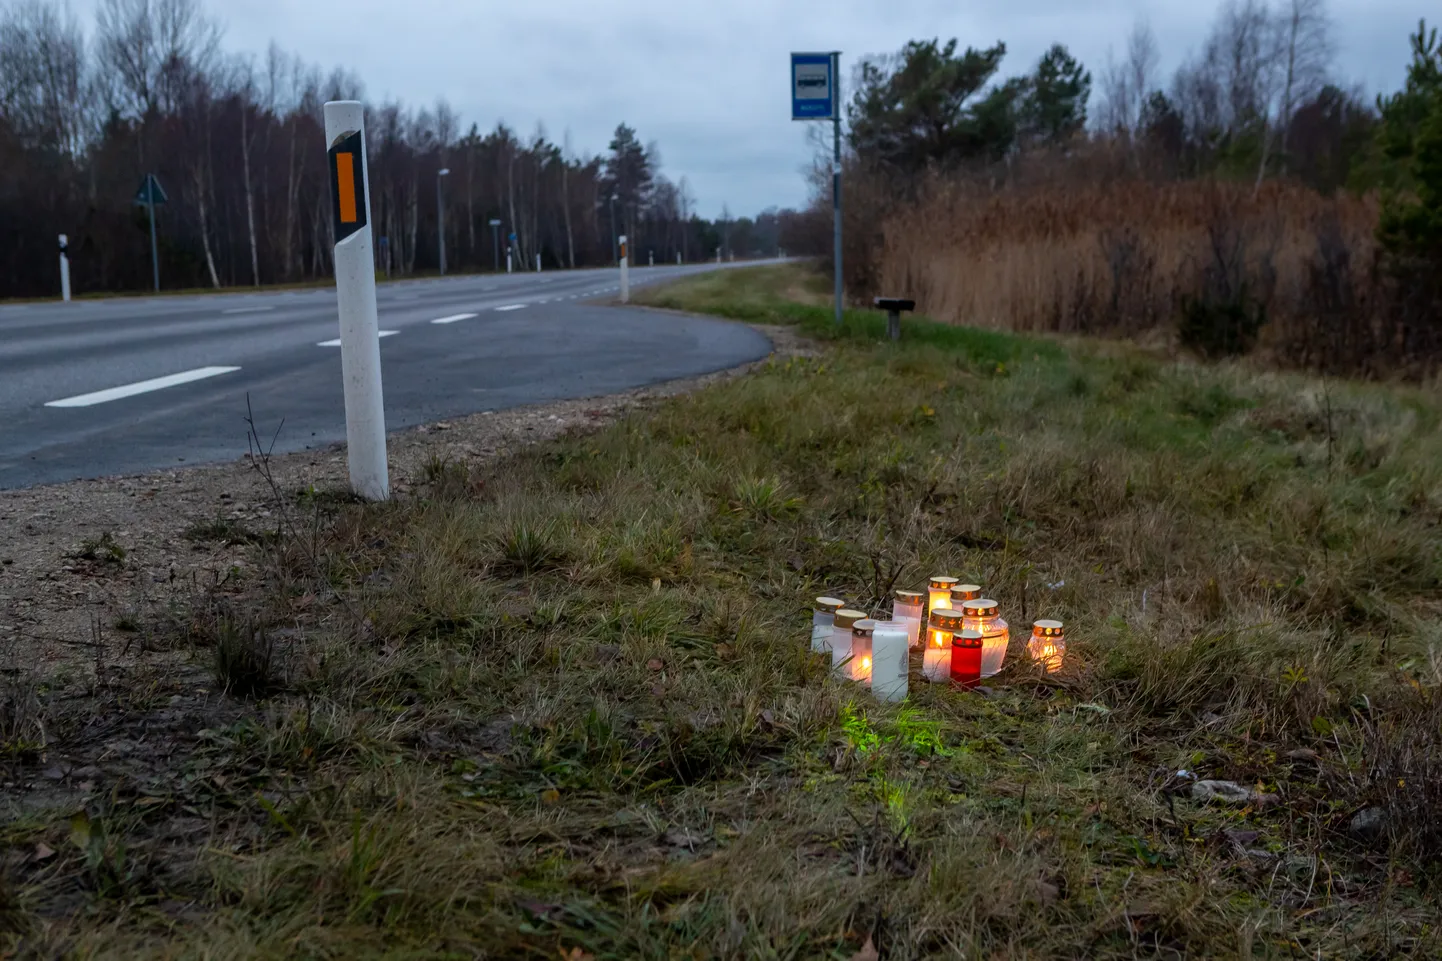 Politsei sai teate õnnetusest eelmise aasta 8. novembril kella poole kaheksa paiku. Kiirabi viis tüdruku haiglasse ning sealt edasi kopteriga Tallinna lastehaiglasse, kus ta meedikute pingutustest hoolimata suri.